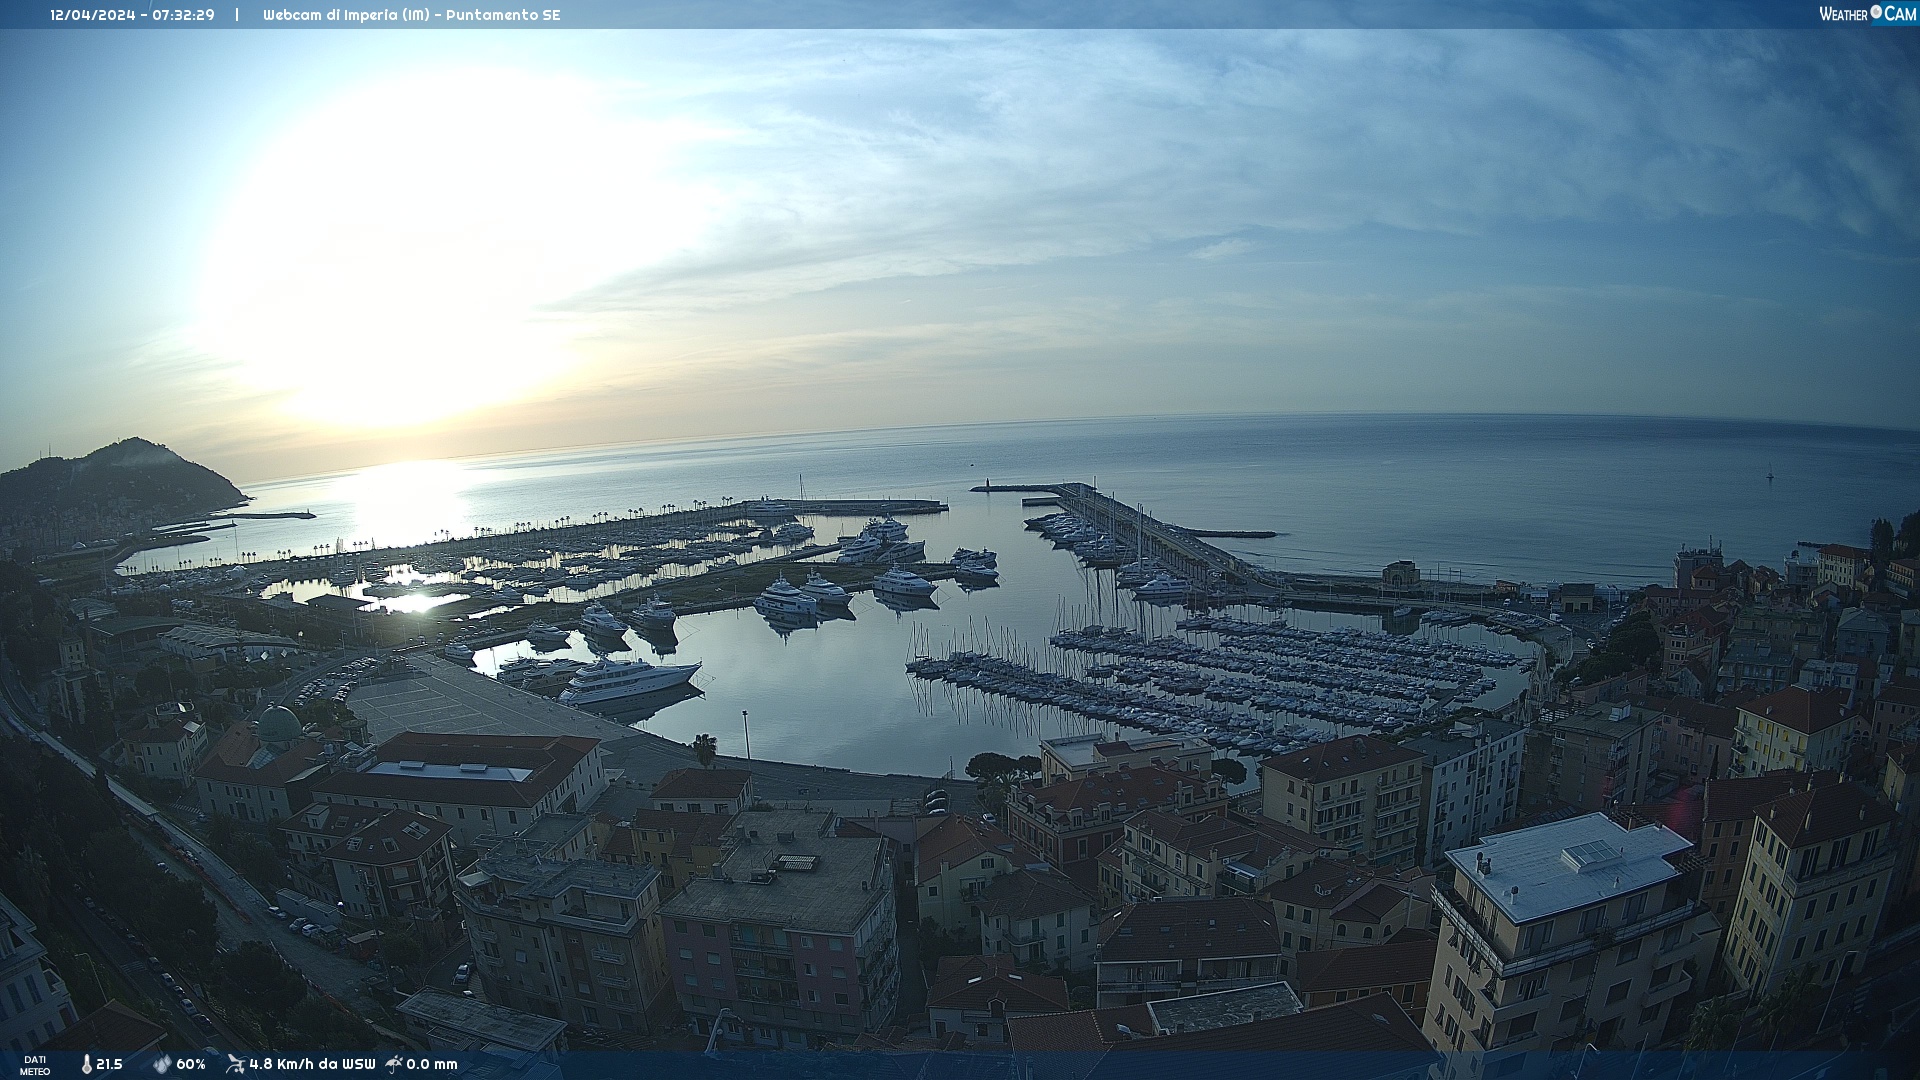 Webcam Liguria: Imperia